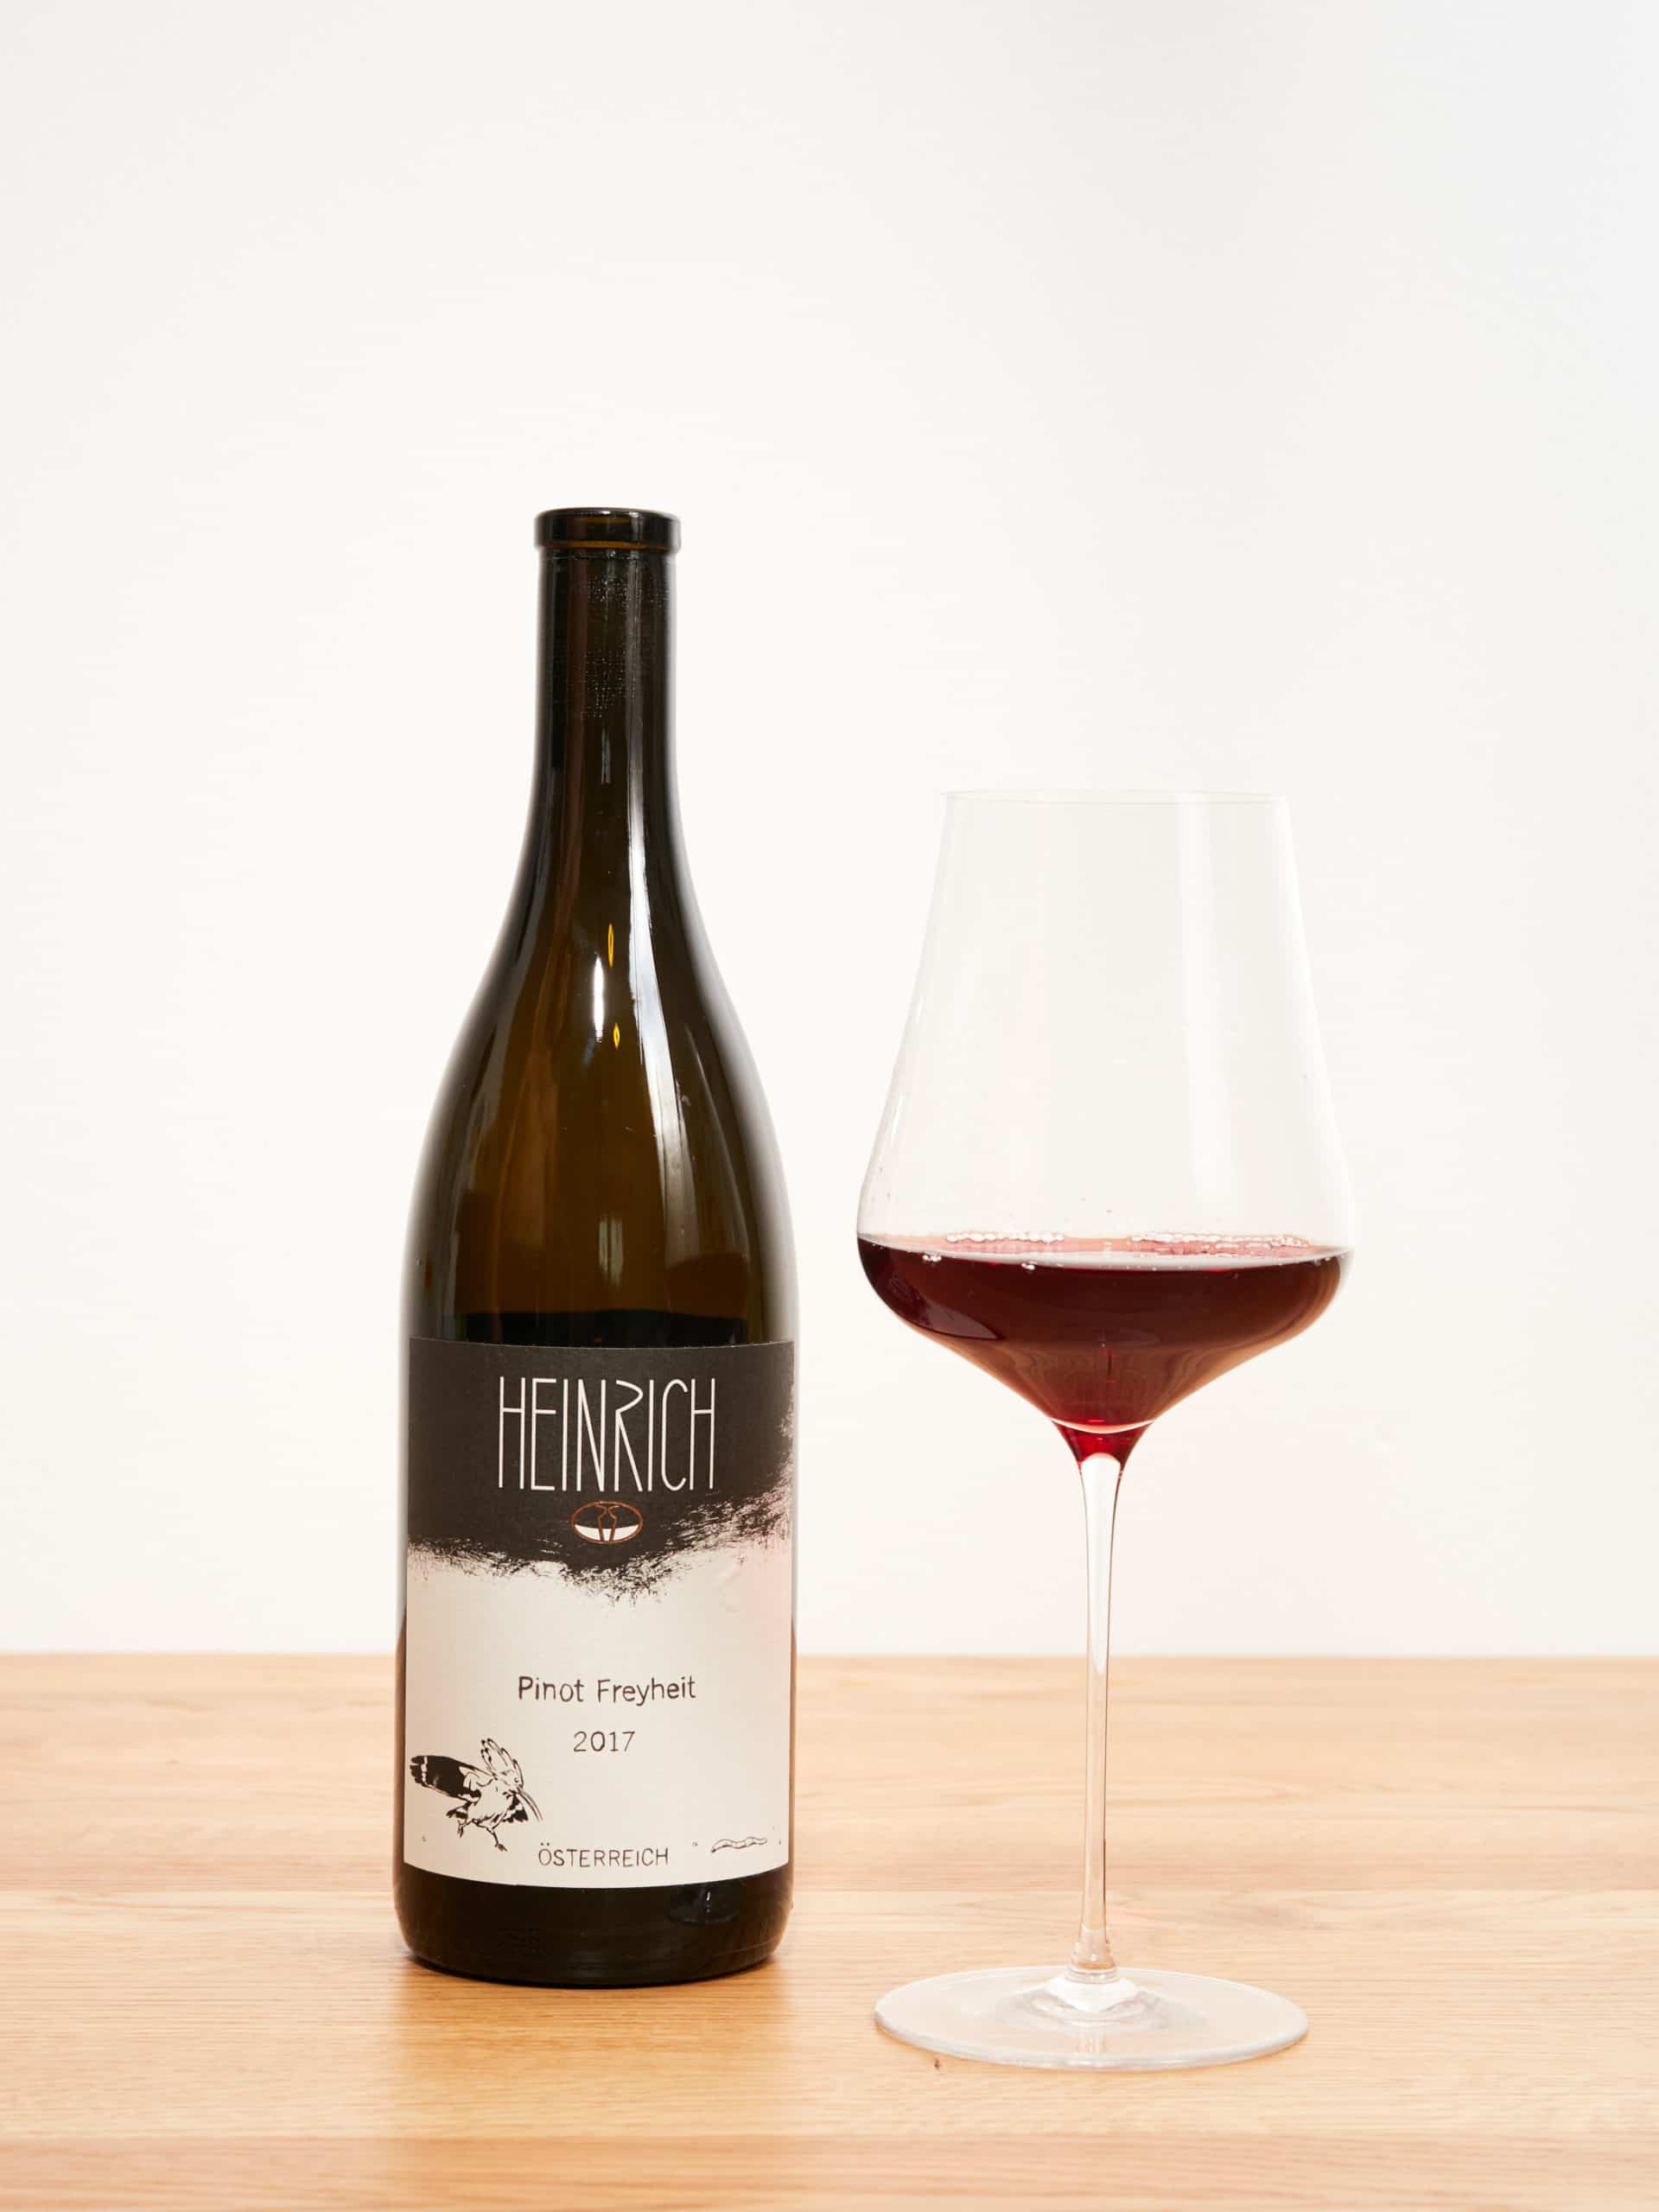 Heinrich – Pinot Freyheit 2017